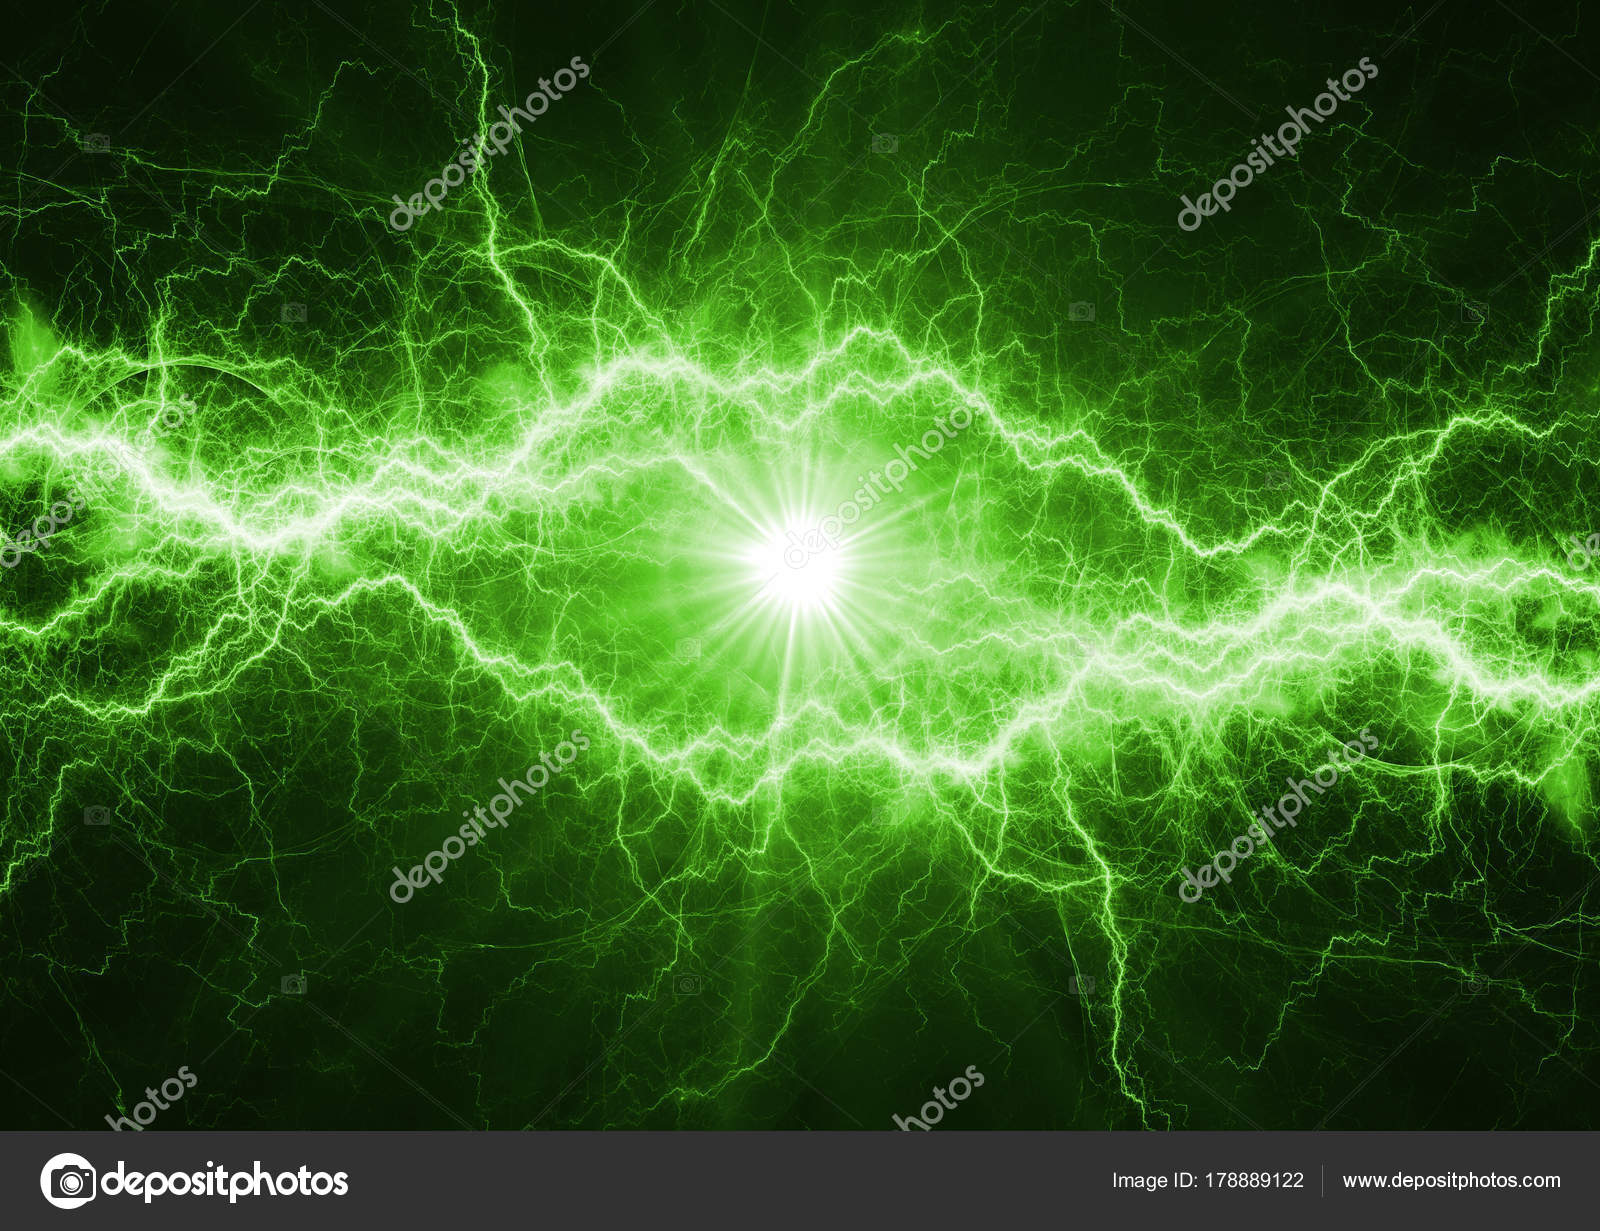 Sét Plasma Năng Lượng Xanh rất đặc biệt và hấp dẫn. Hãy xem hình ảnh liên quan để cảm nhận sức mạnh của nguồn năng lượng xanh này.